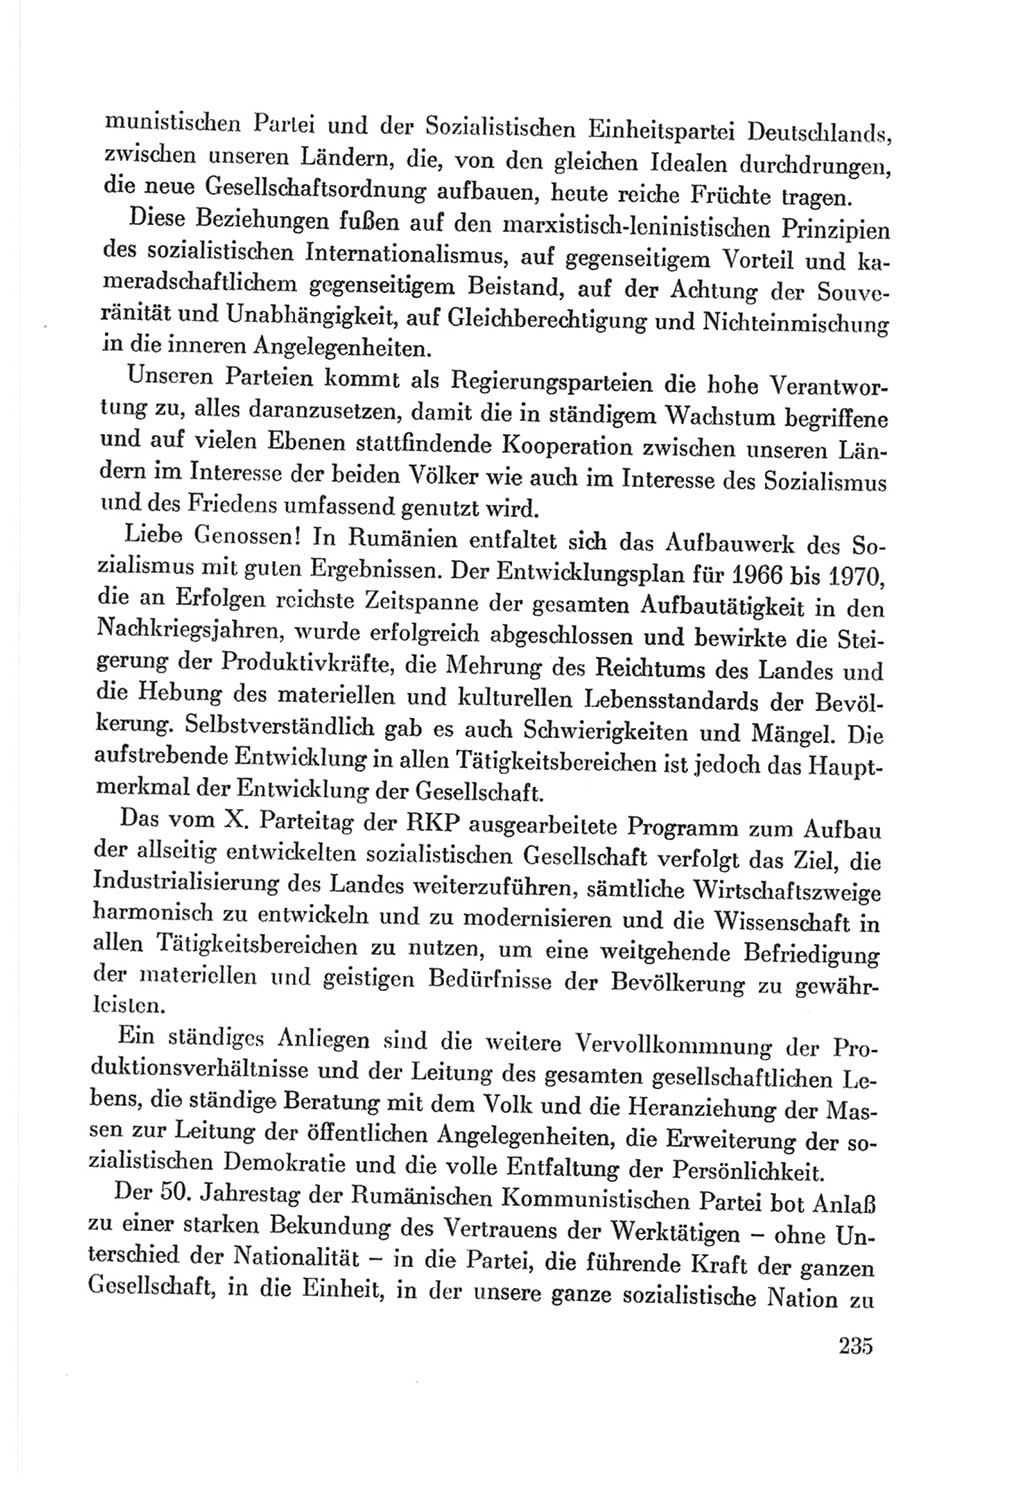 Protokoll der Verhandlungen des Ⅷ. Parteitages der Sozialistischen Einheitspartei Deutschlands (SED) [Deutsche Demokratische Republik (DDR)] 1971, Band 1, Seite 235 (Prot. Verh. Ⅷ. PT SED DDR 1971, Bd. 1, S. 235)